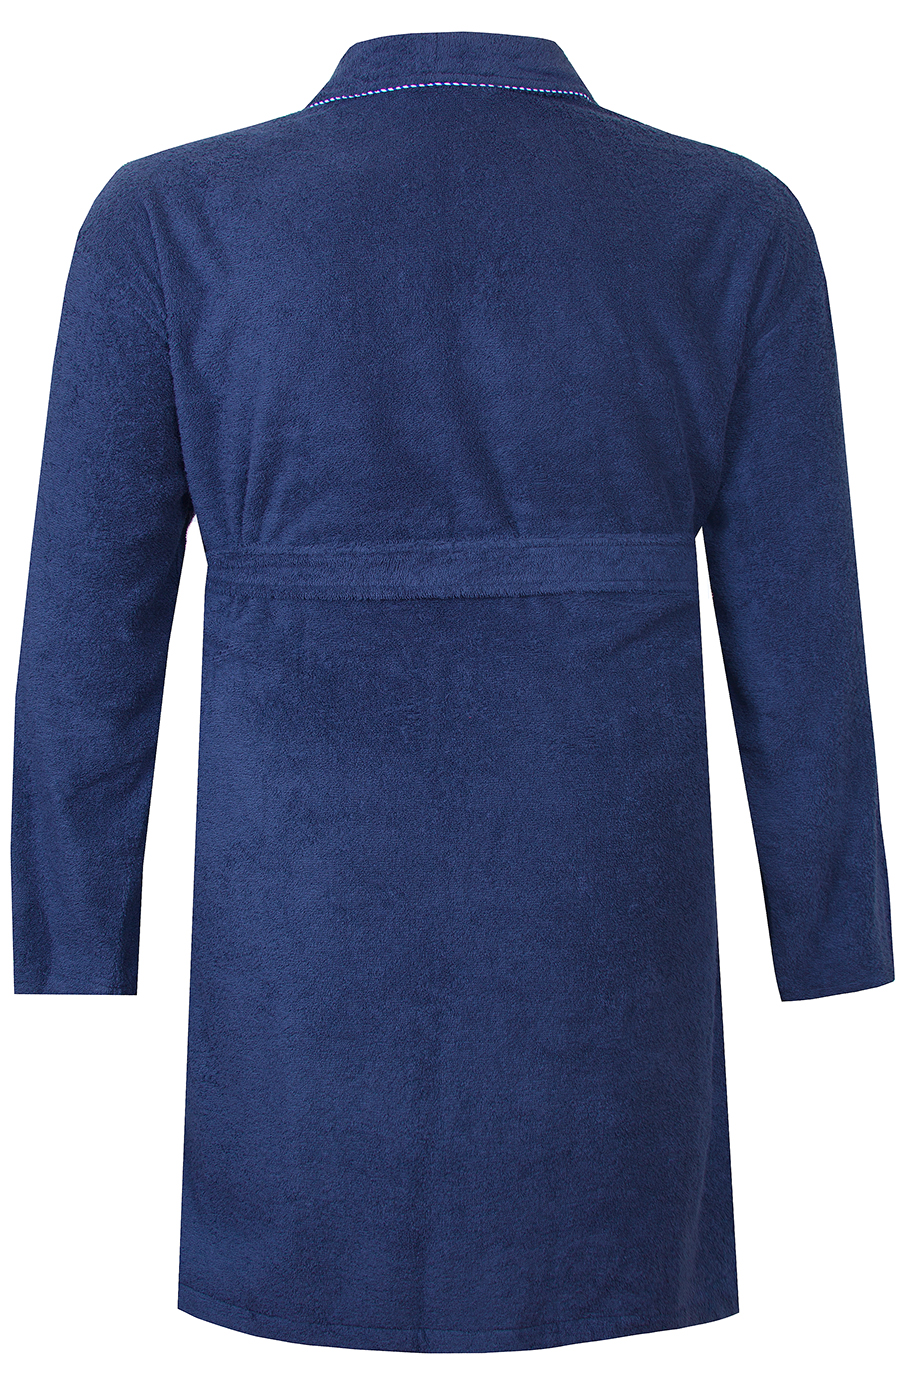 Мужской темно синий халат большого размера